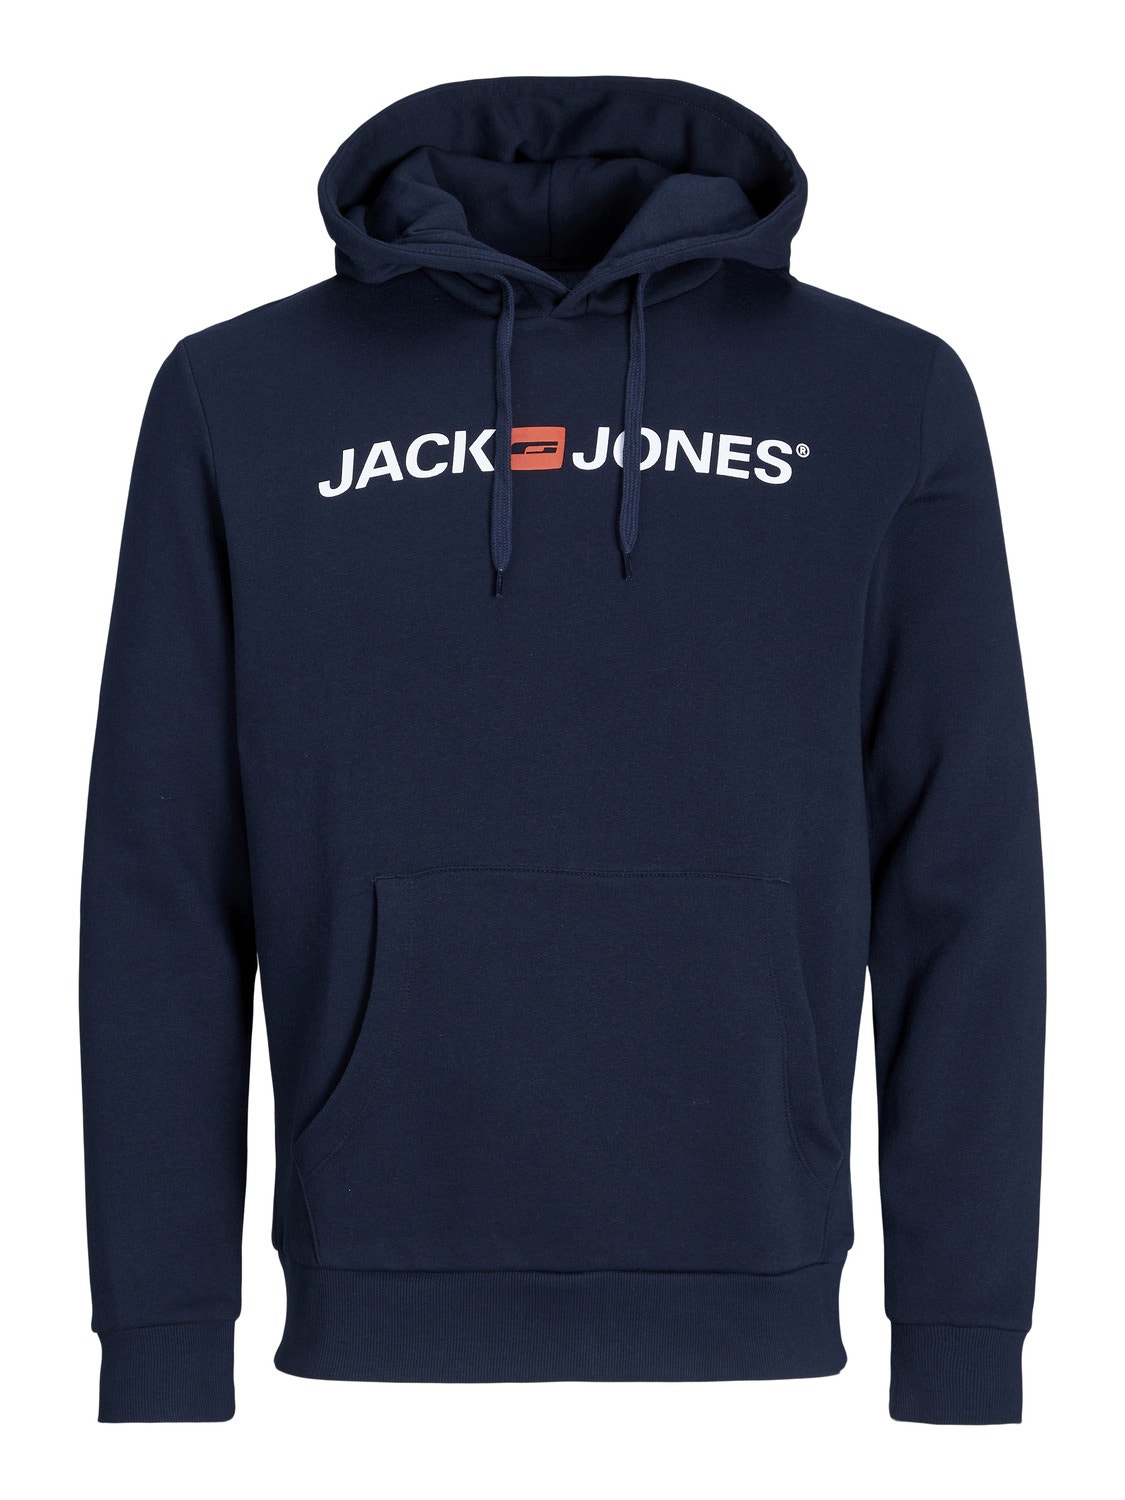 Jack & Jones Logo Hoodie -Navy Blazer - 12137054